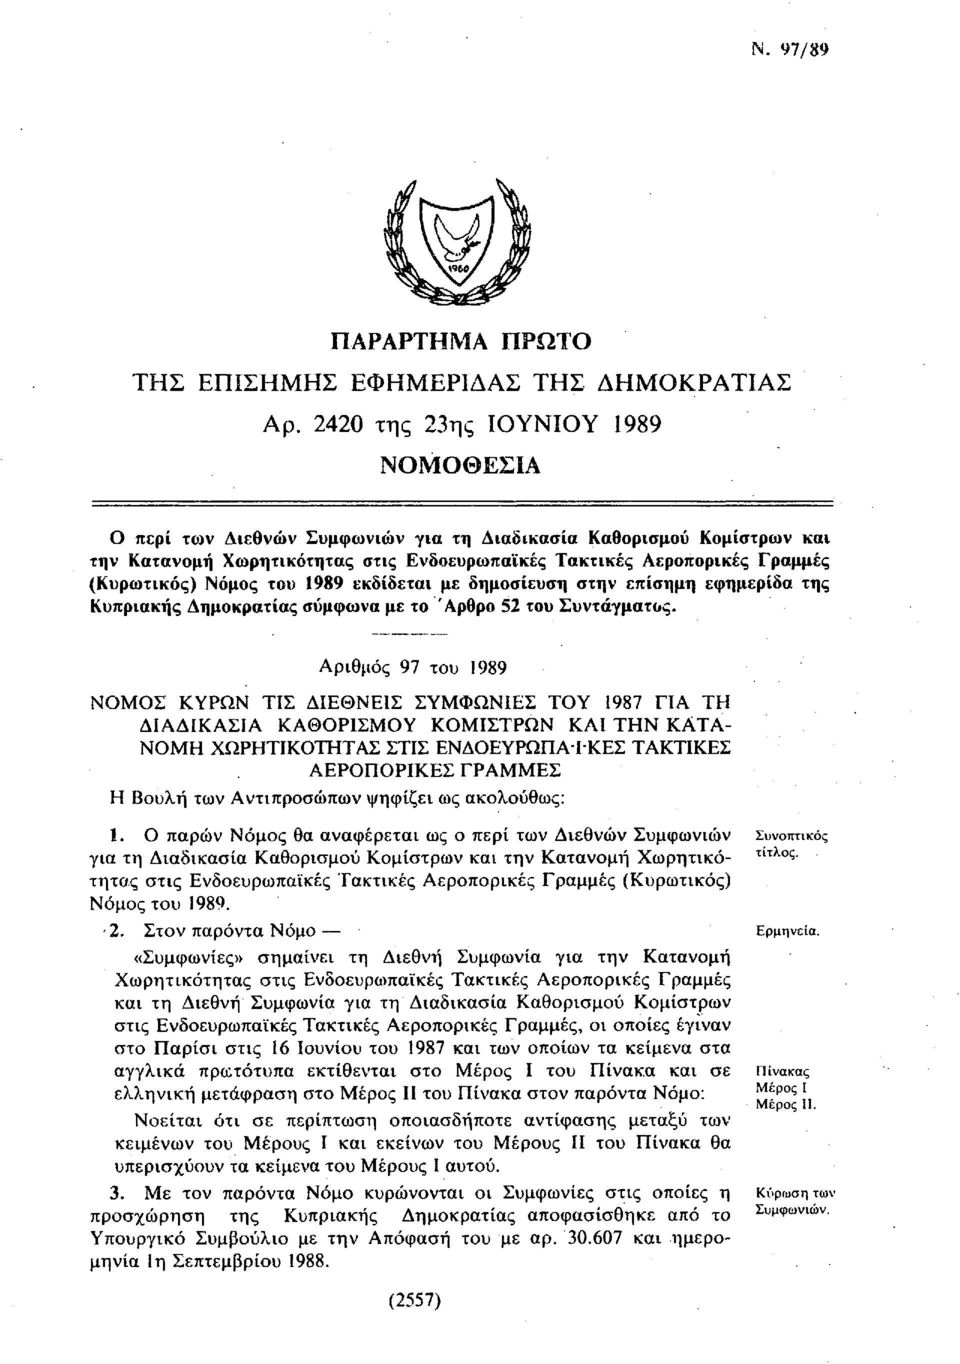 Νόμος του 1989 εκδίδεται με δημοσίευση στην επίσημη εφημερίδα της Κυπριακής Δημοκρατίας σύμφωνα με το Άρθρο 52 του Συντάγματος.